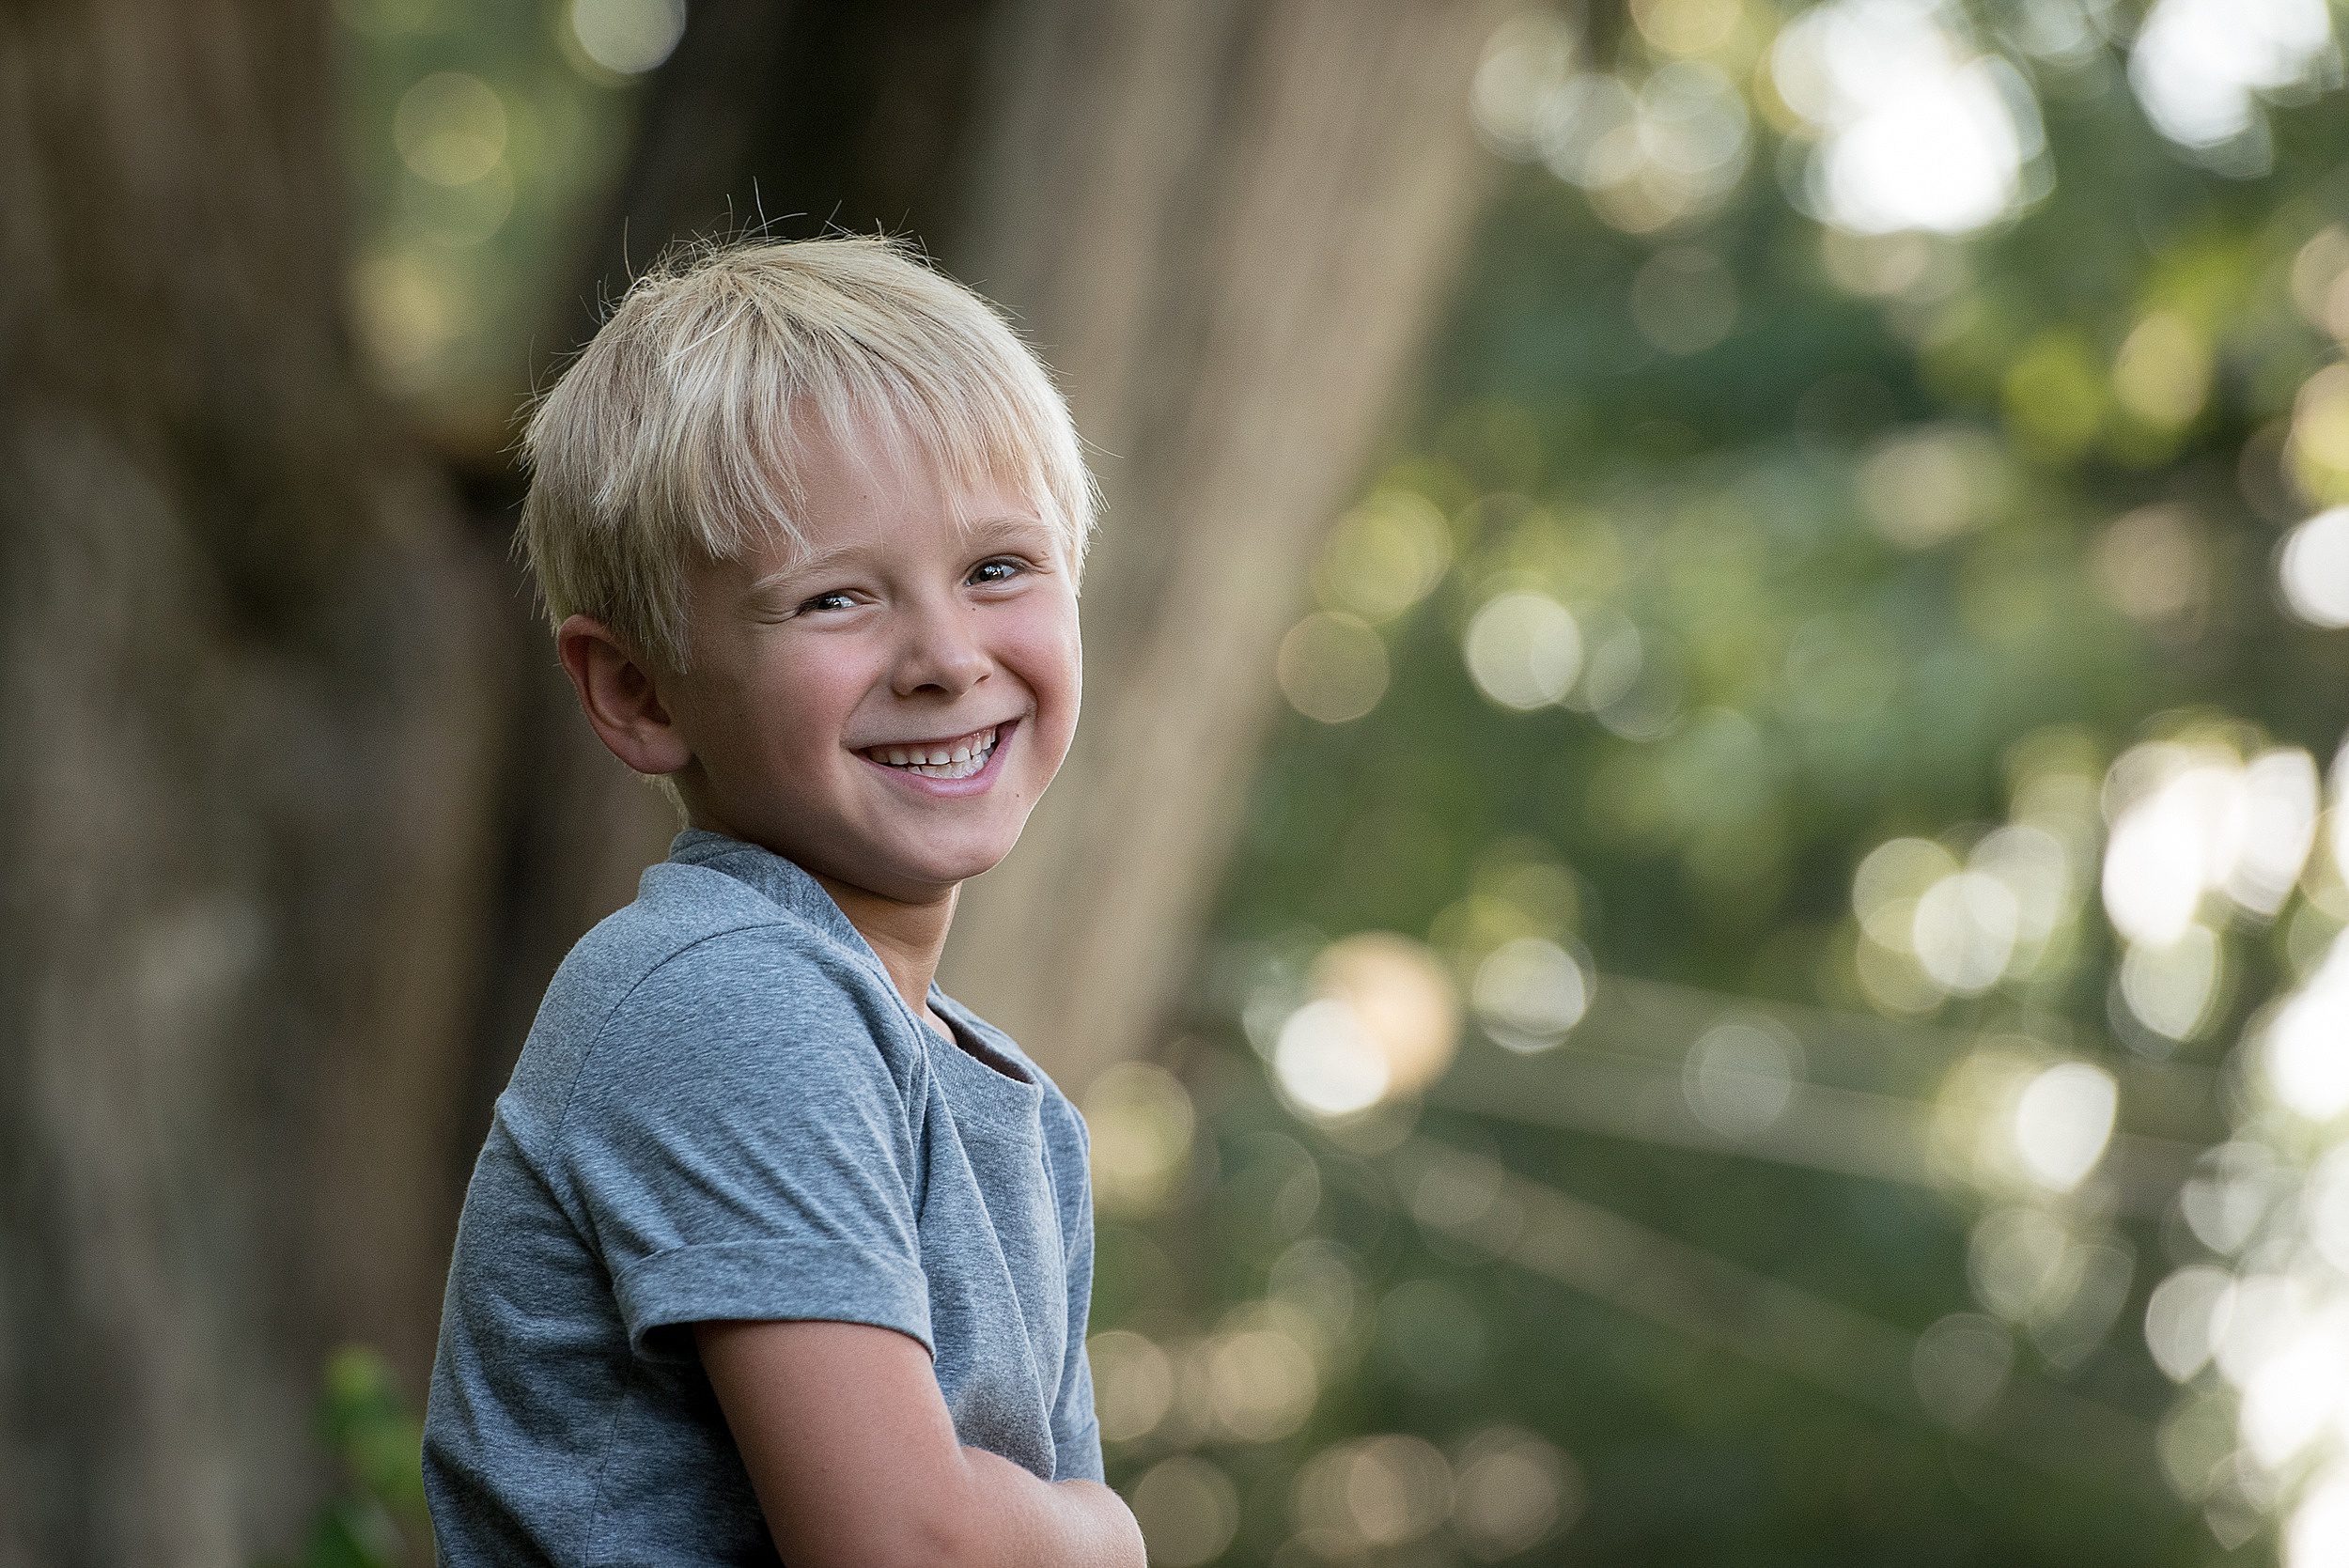 A young boy smiles in a grey shirt in a garden